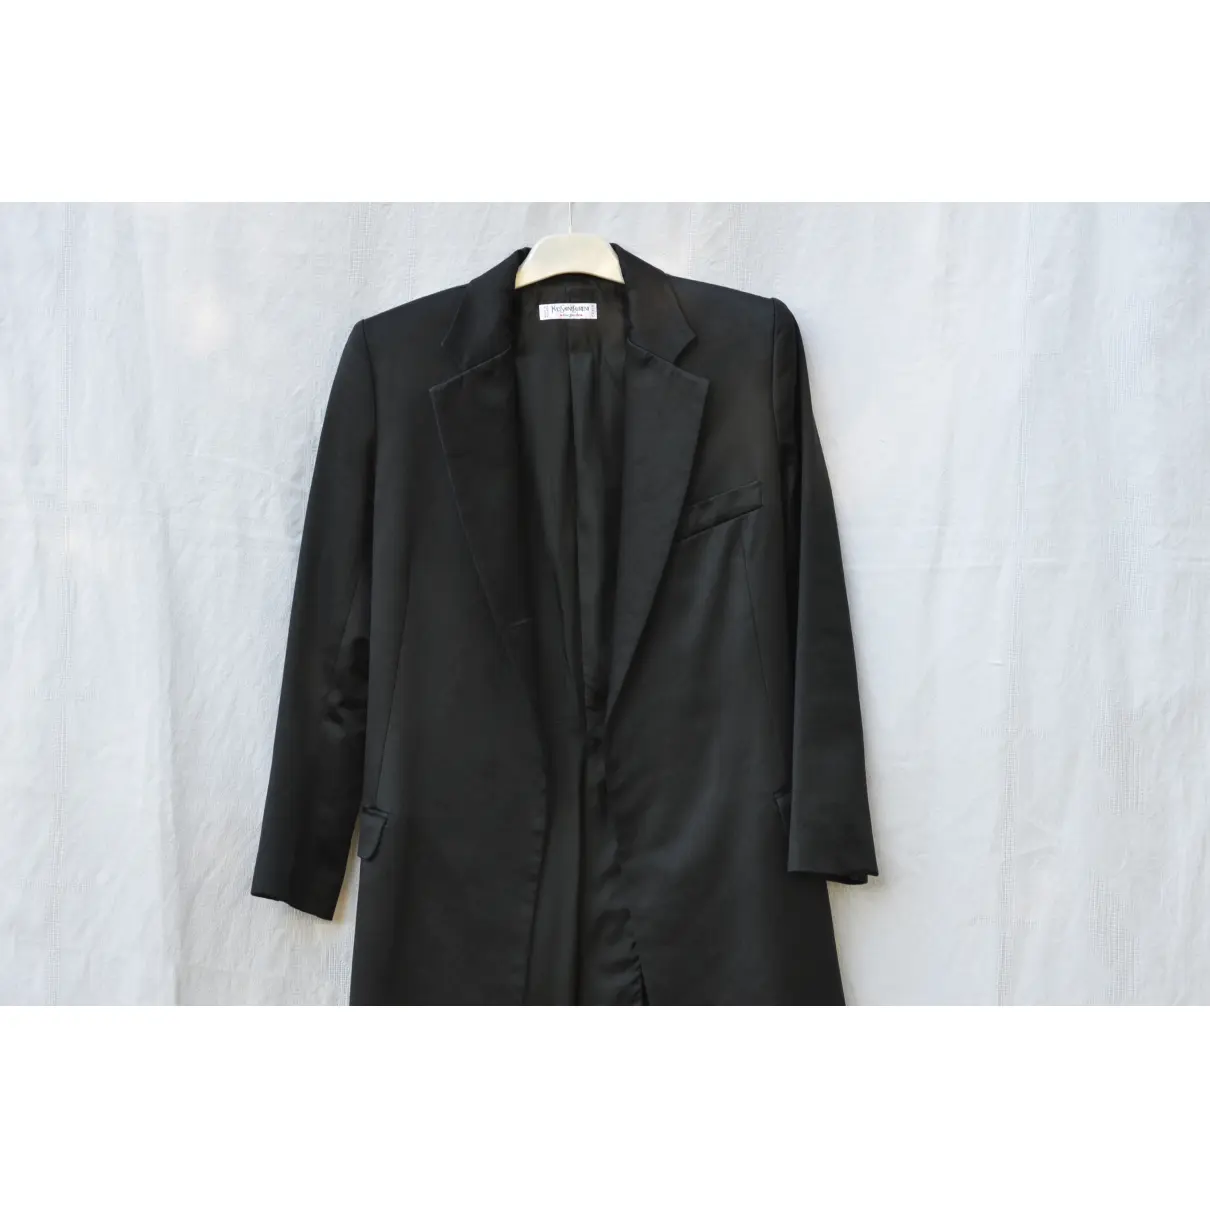 Coat Yves Saint Laurent - Vintage